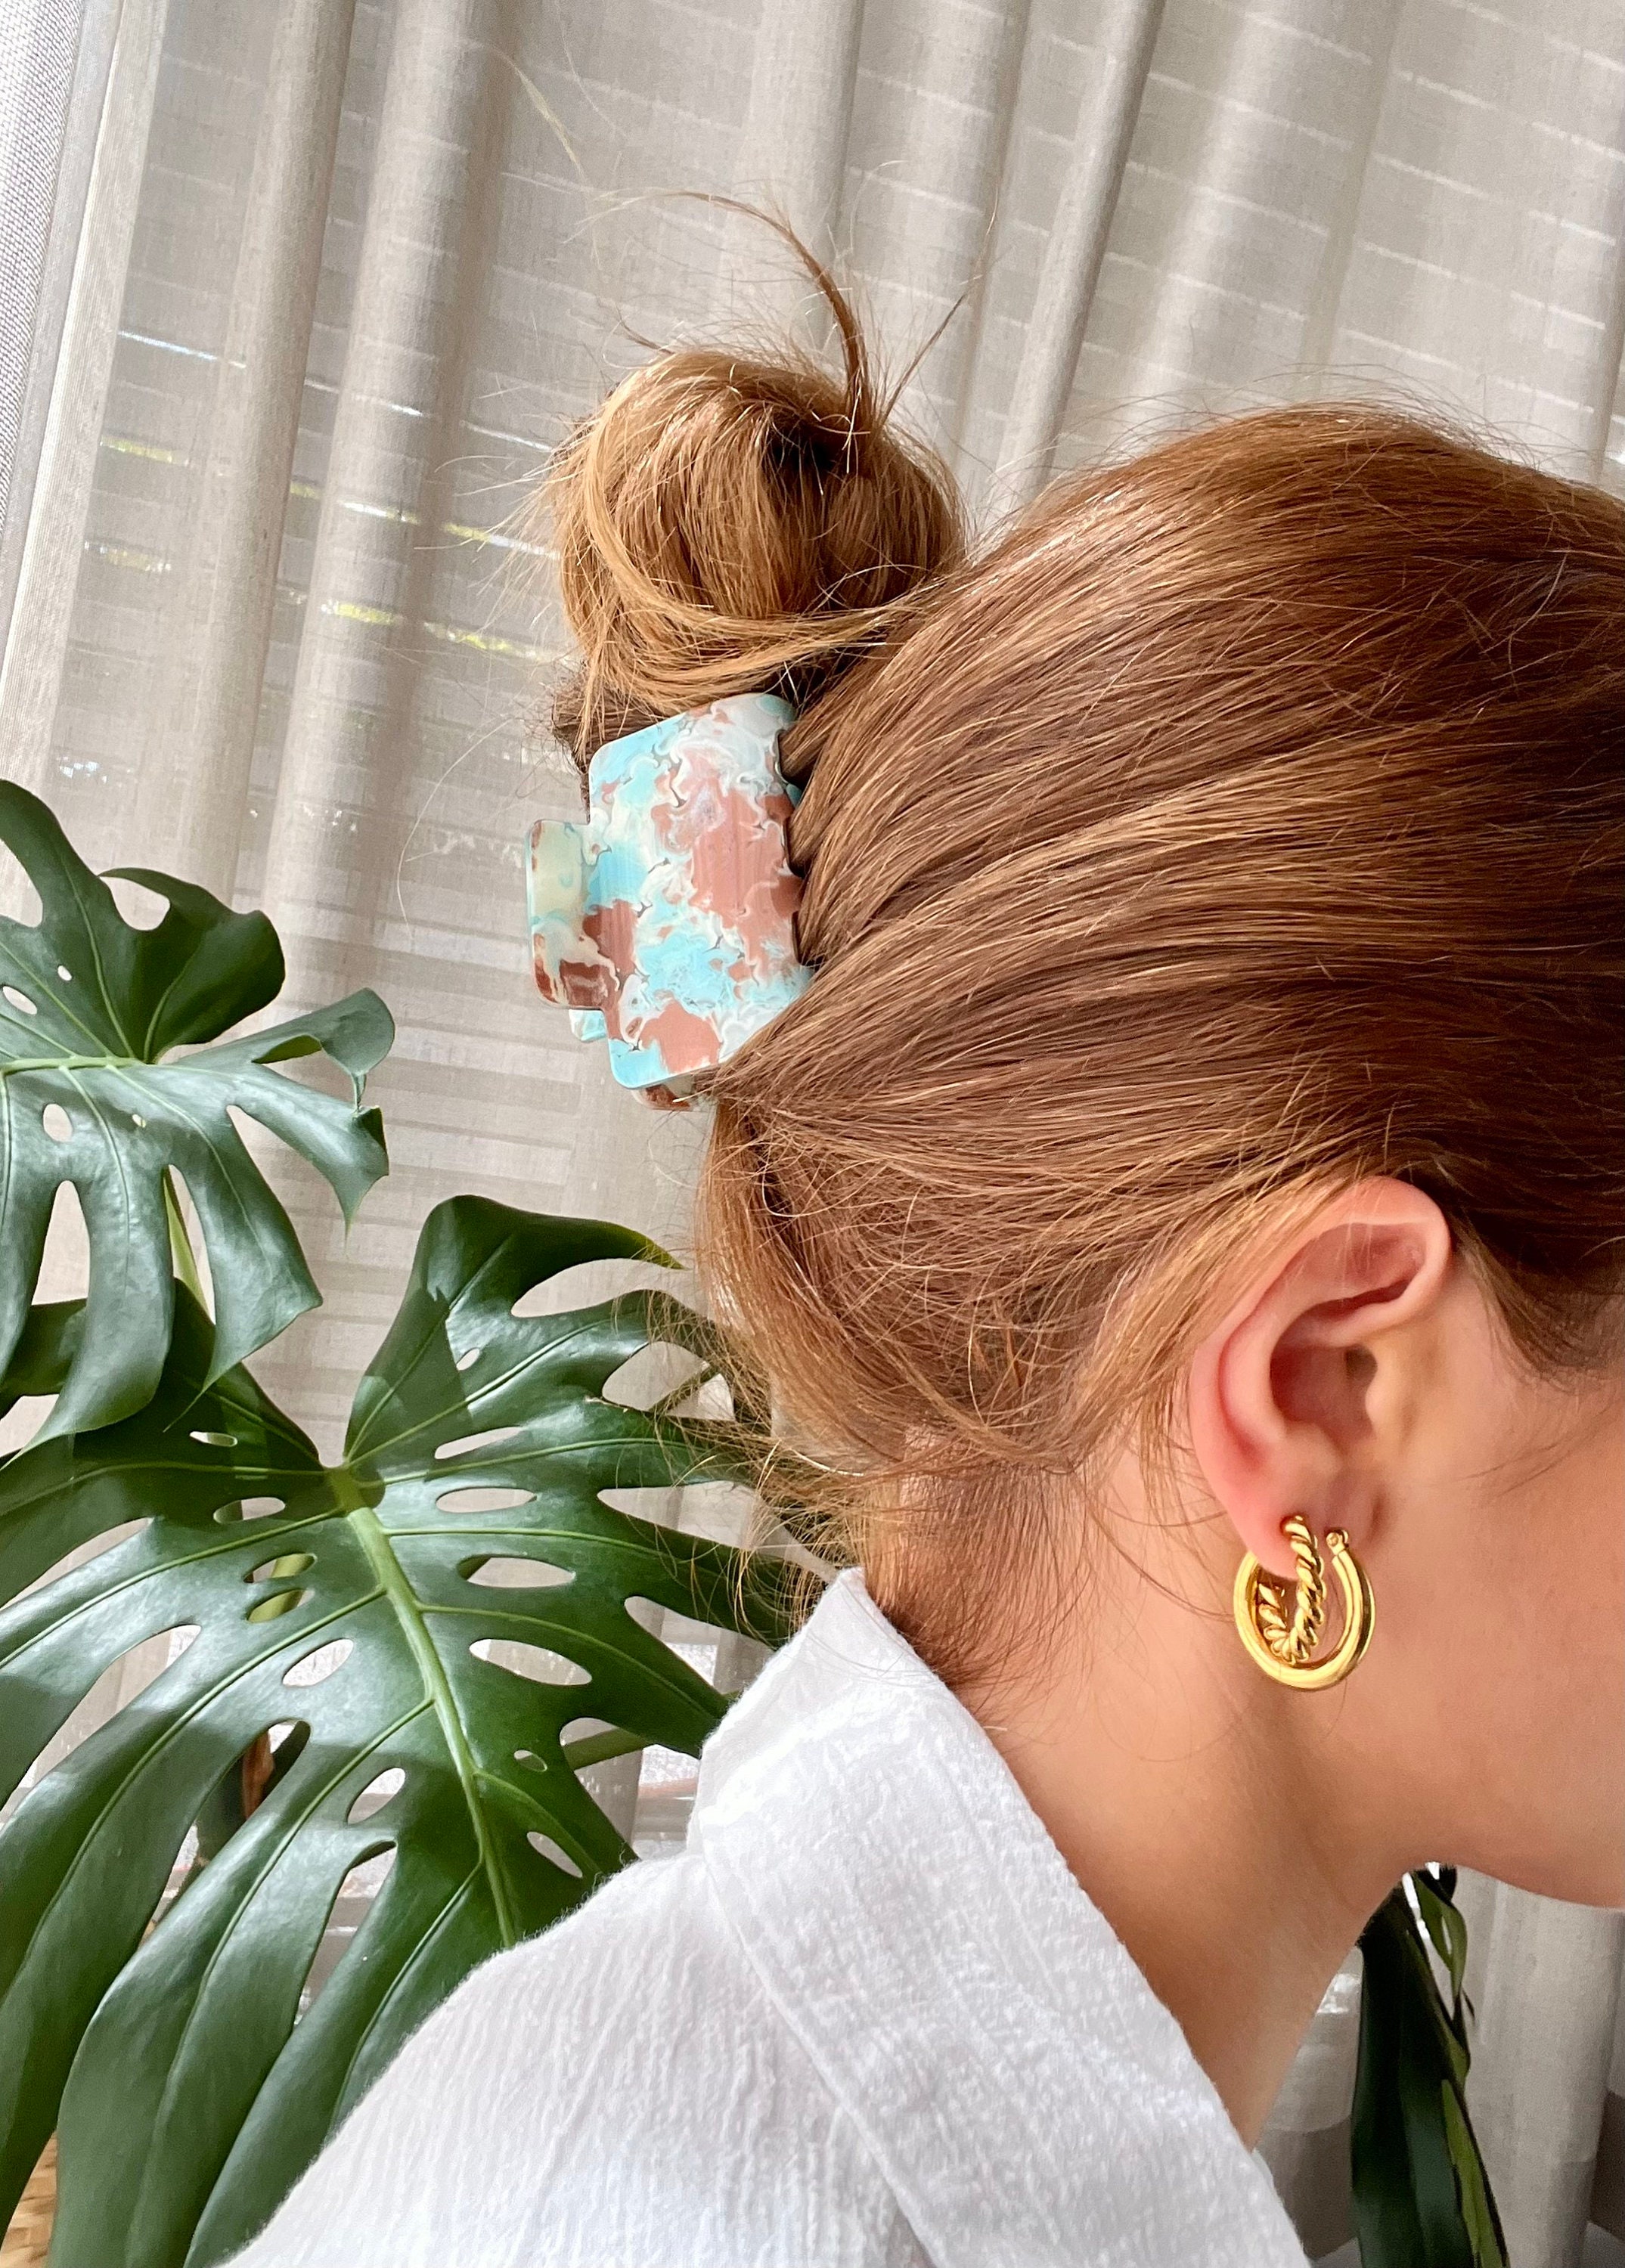 Emma Gold Hoop Earrings – Thick Chunky Hoop Earrings